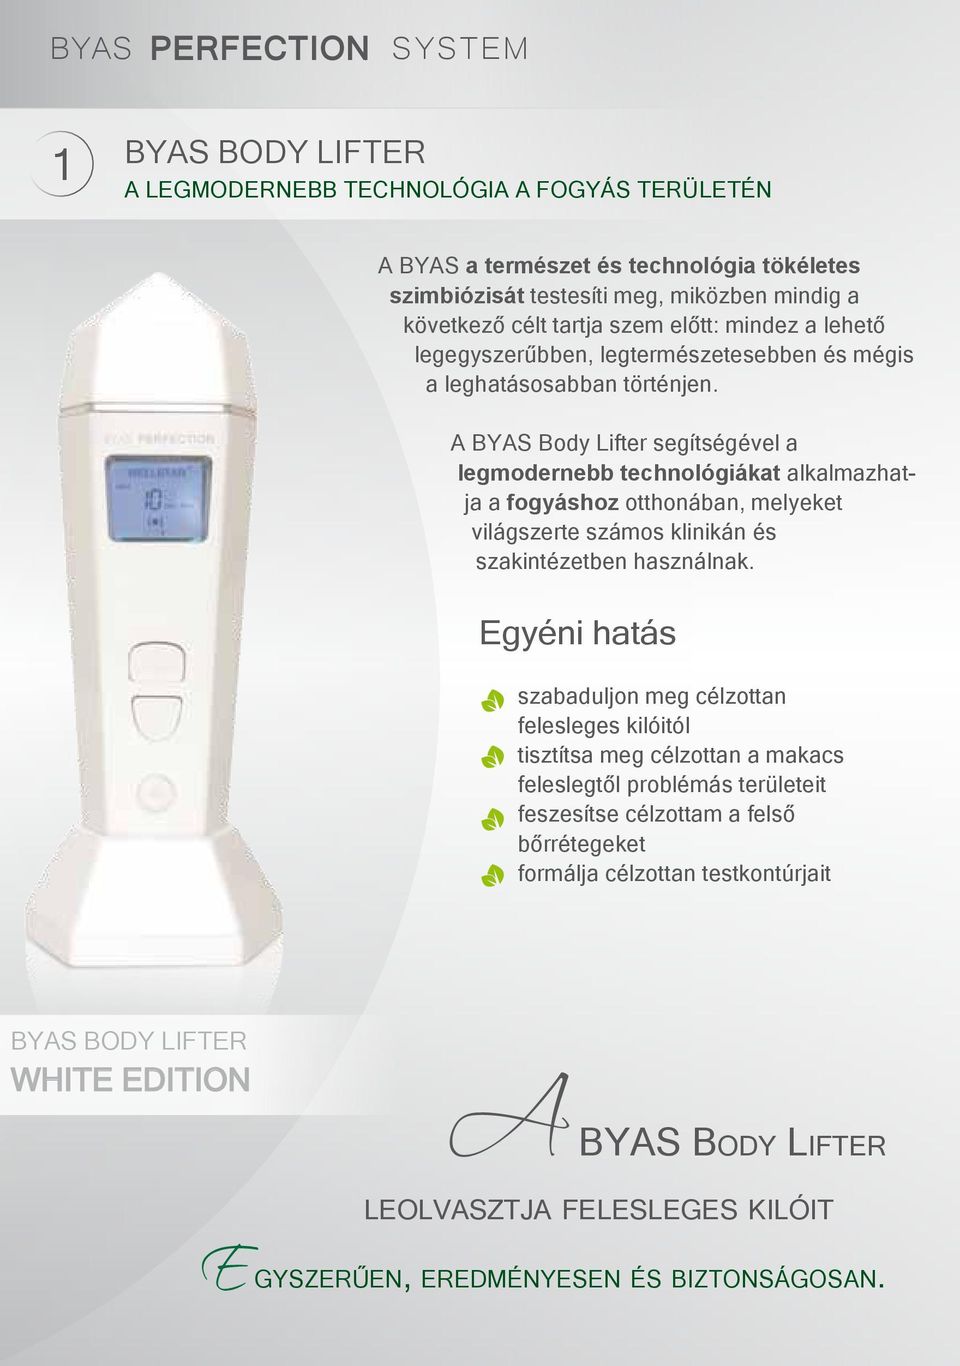 A BYAS Body Lifter segítségével a legmodernebb technológiákat alkalmazhatja a fogyáshoz otthonában, melyeket világszerte számos klinikán és szakintézetben használnak.